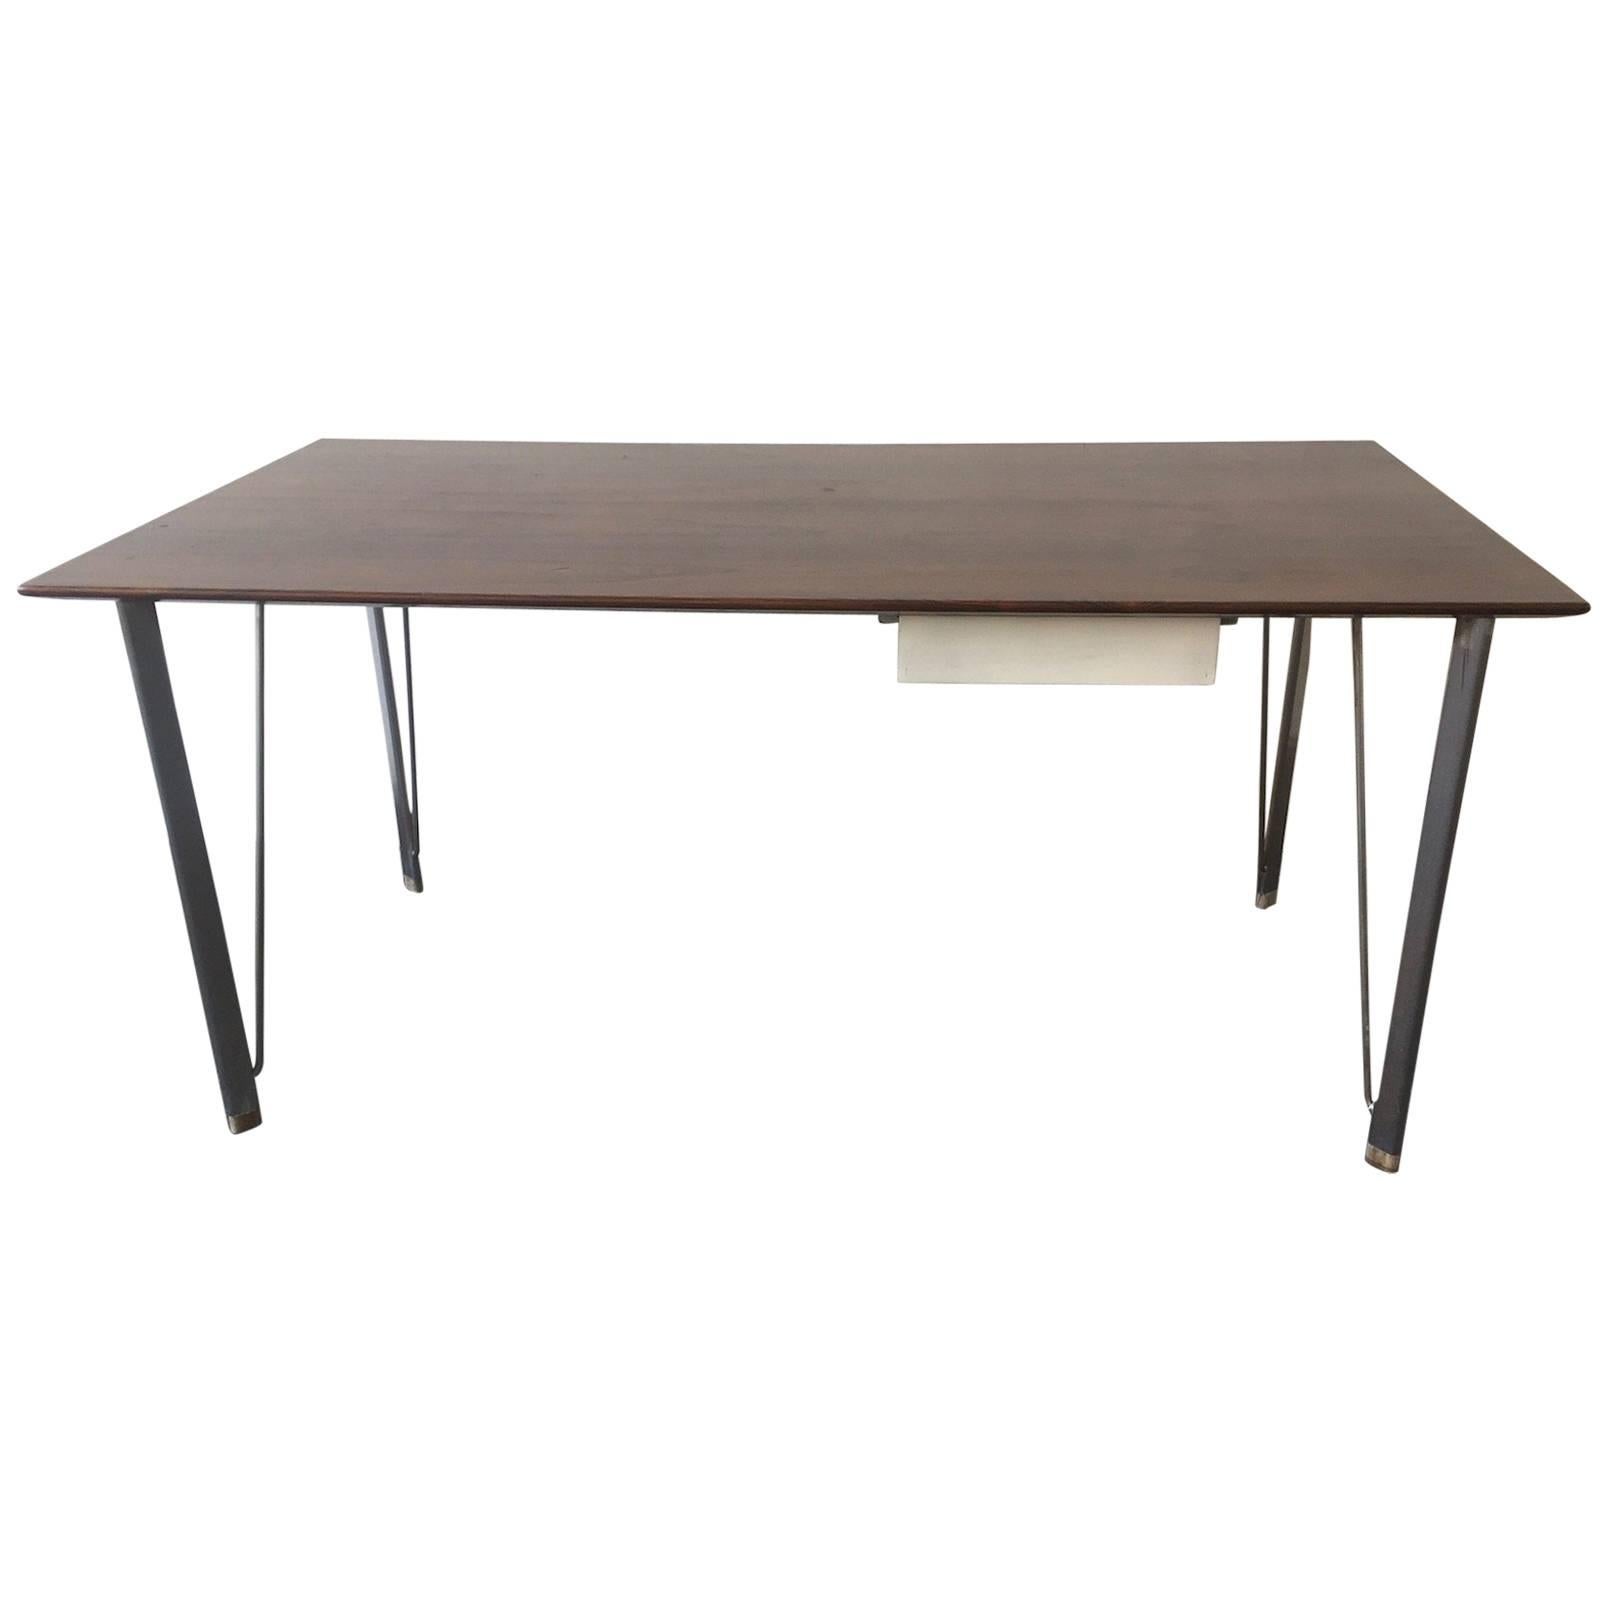 Rare Arne Jacobsen Desk For Sale